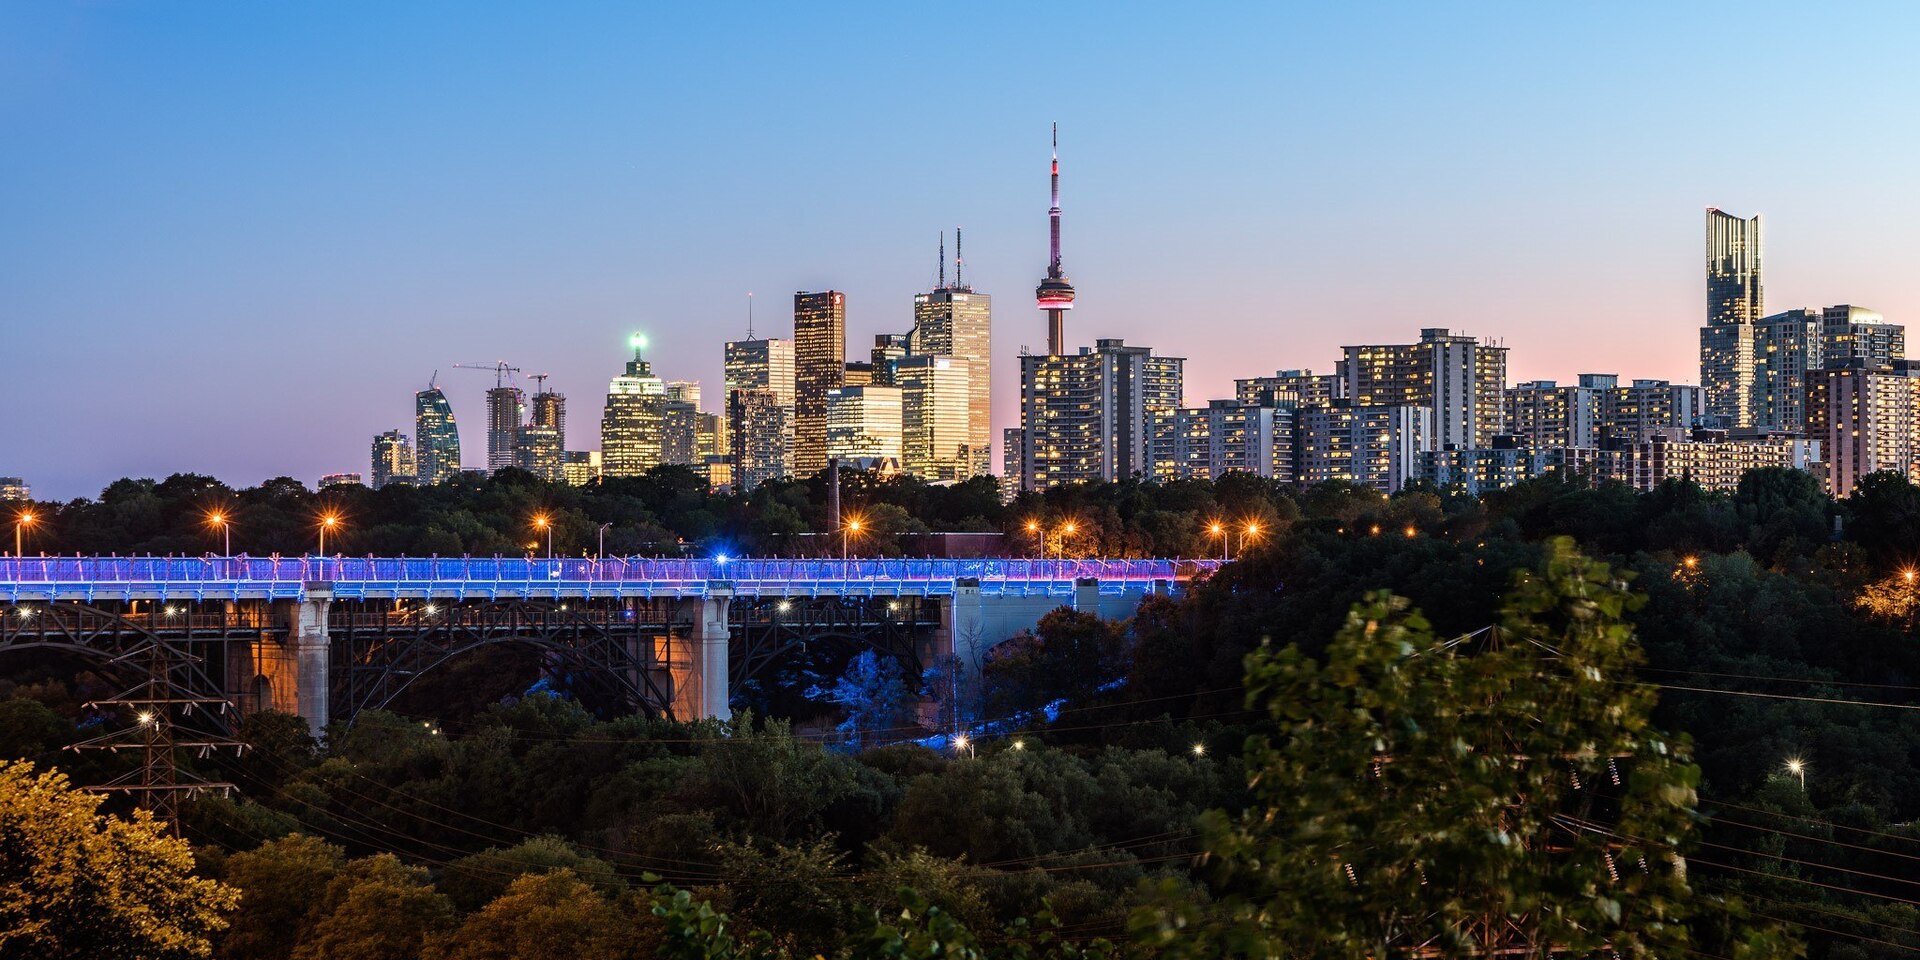 Ao longe, o famoso Viaduto Bloor ajuda a compor um dos mais belos cenários da cidade de Toronto